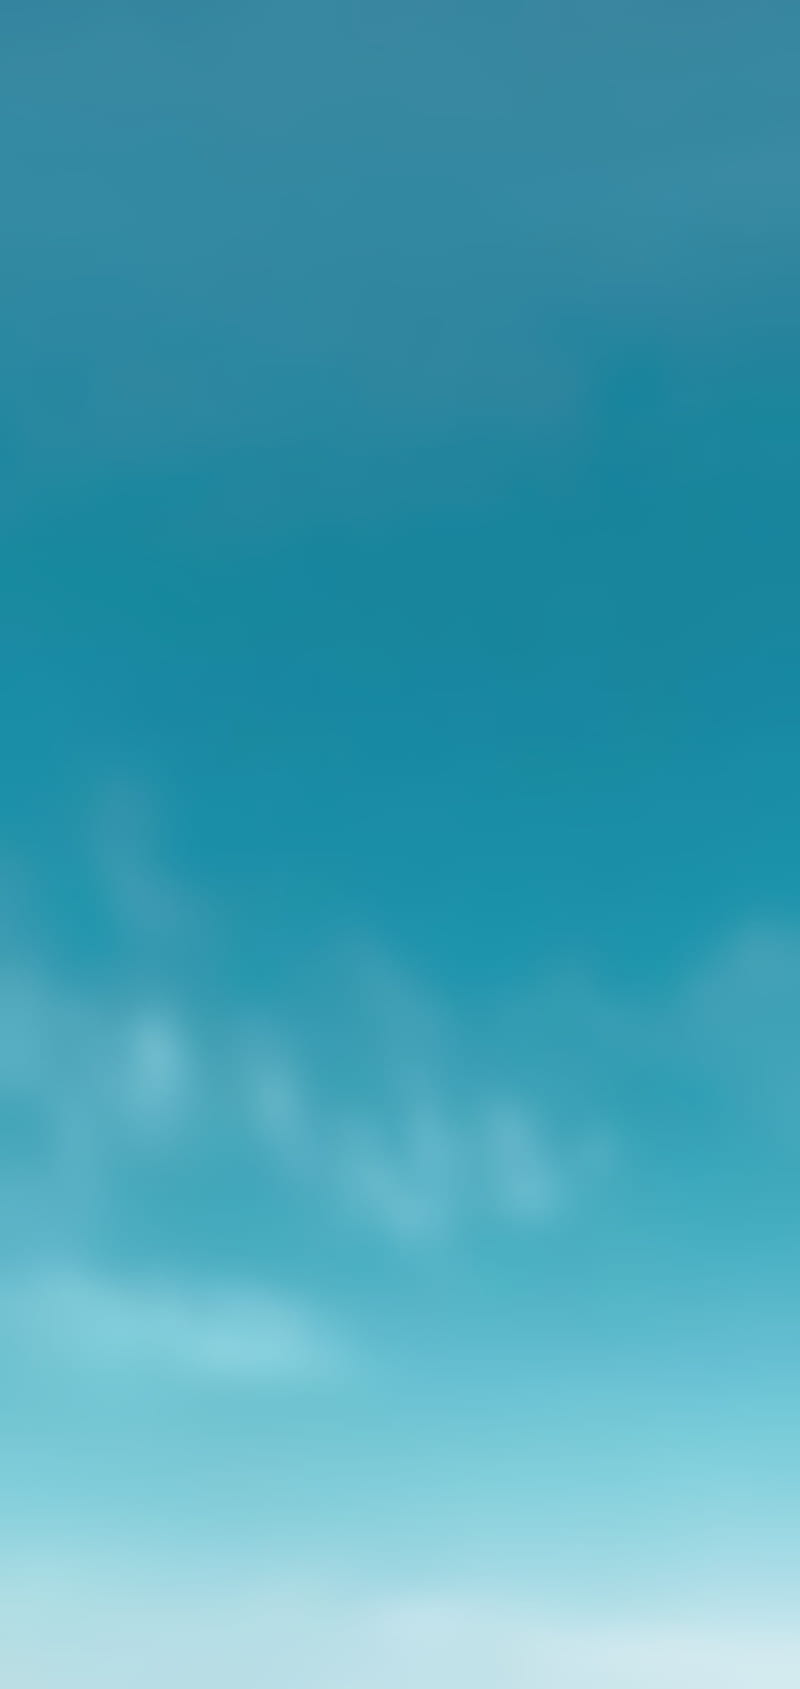 Huawei, background, blue, celeste, colors, gradient, simple, slender, HD  phone wallpaper | Peakpx